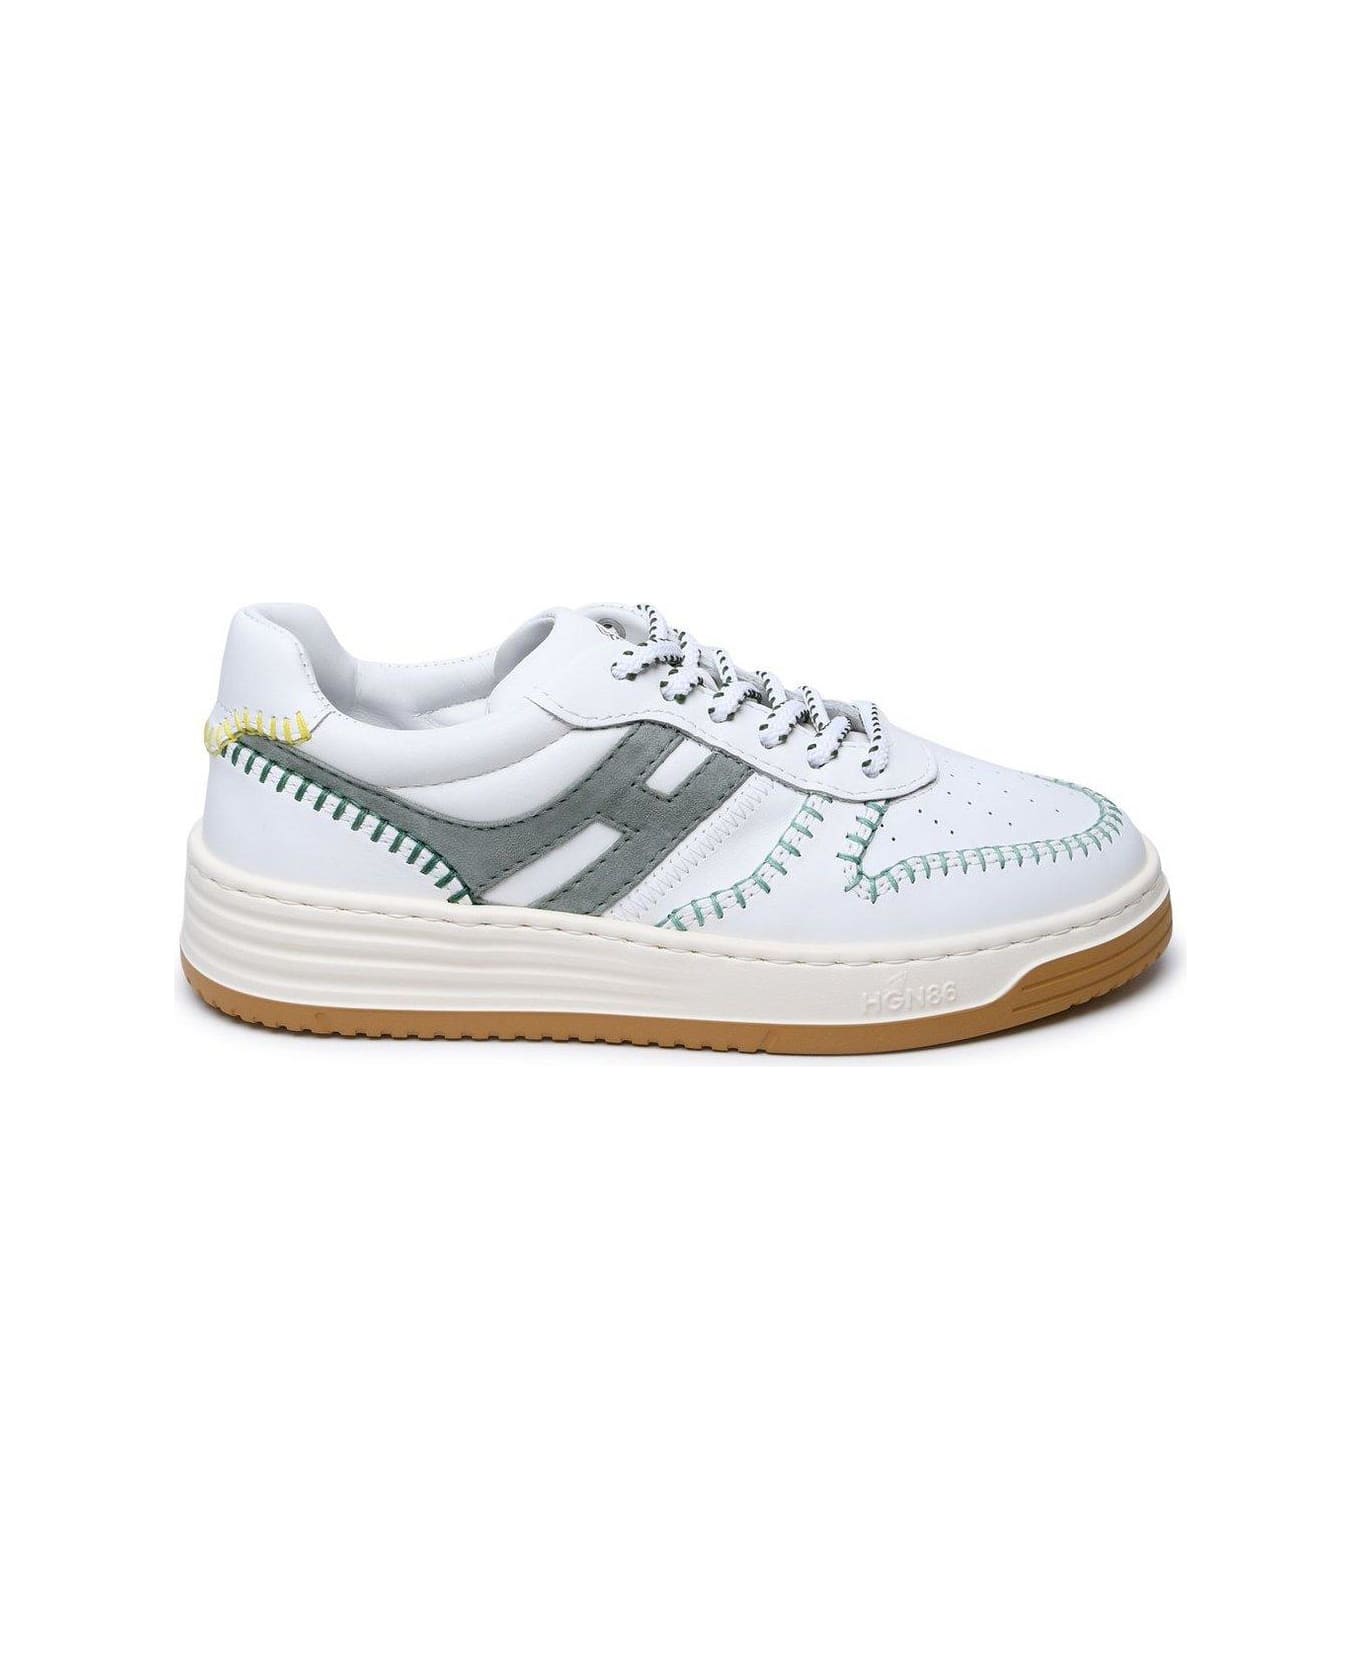 Hogan H630 Low-top Sneakers - AVORIO